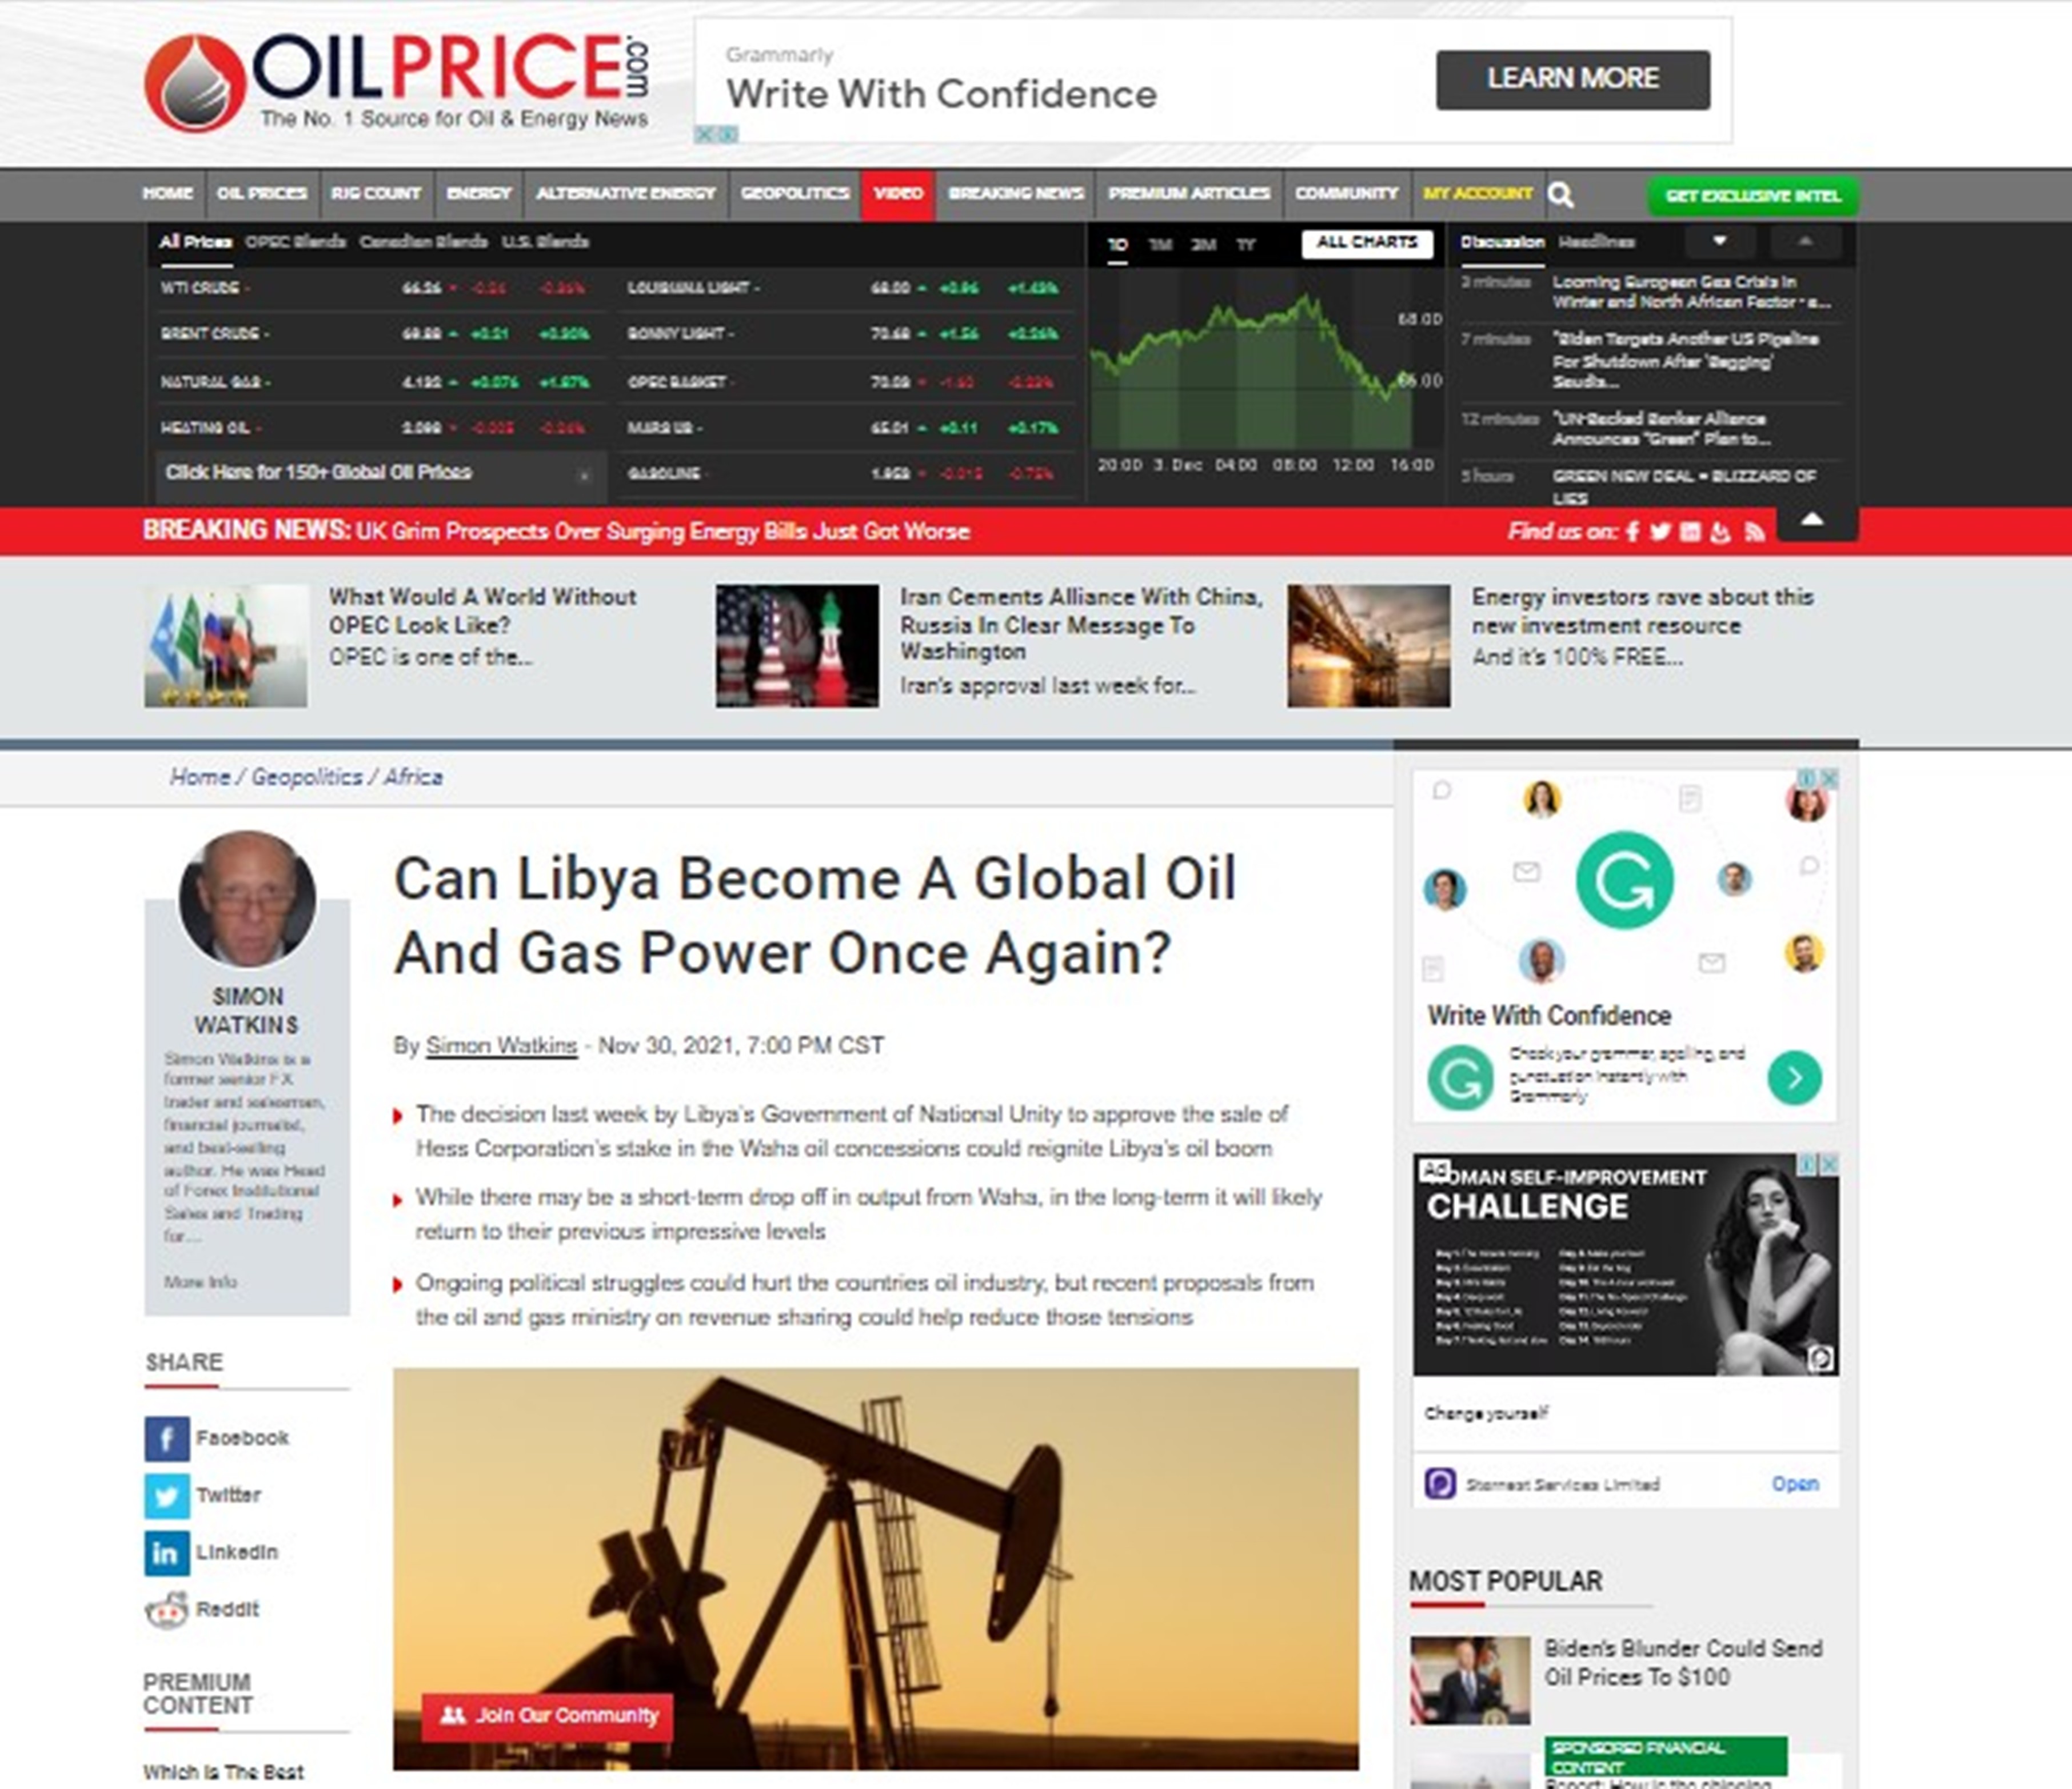 وزارة النفط والغاز: ليبيا بإمكانها أن تصبح قوة عالمية مرة أخرى ولجذب الاستثمارات الأجنبية